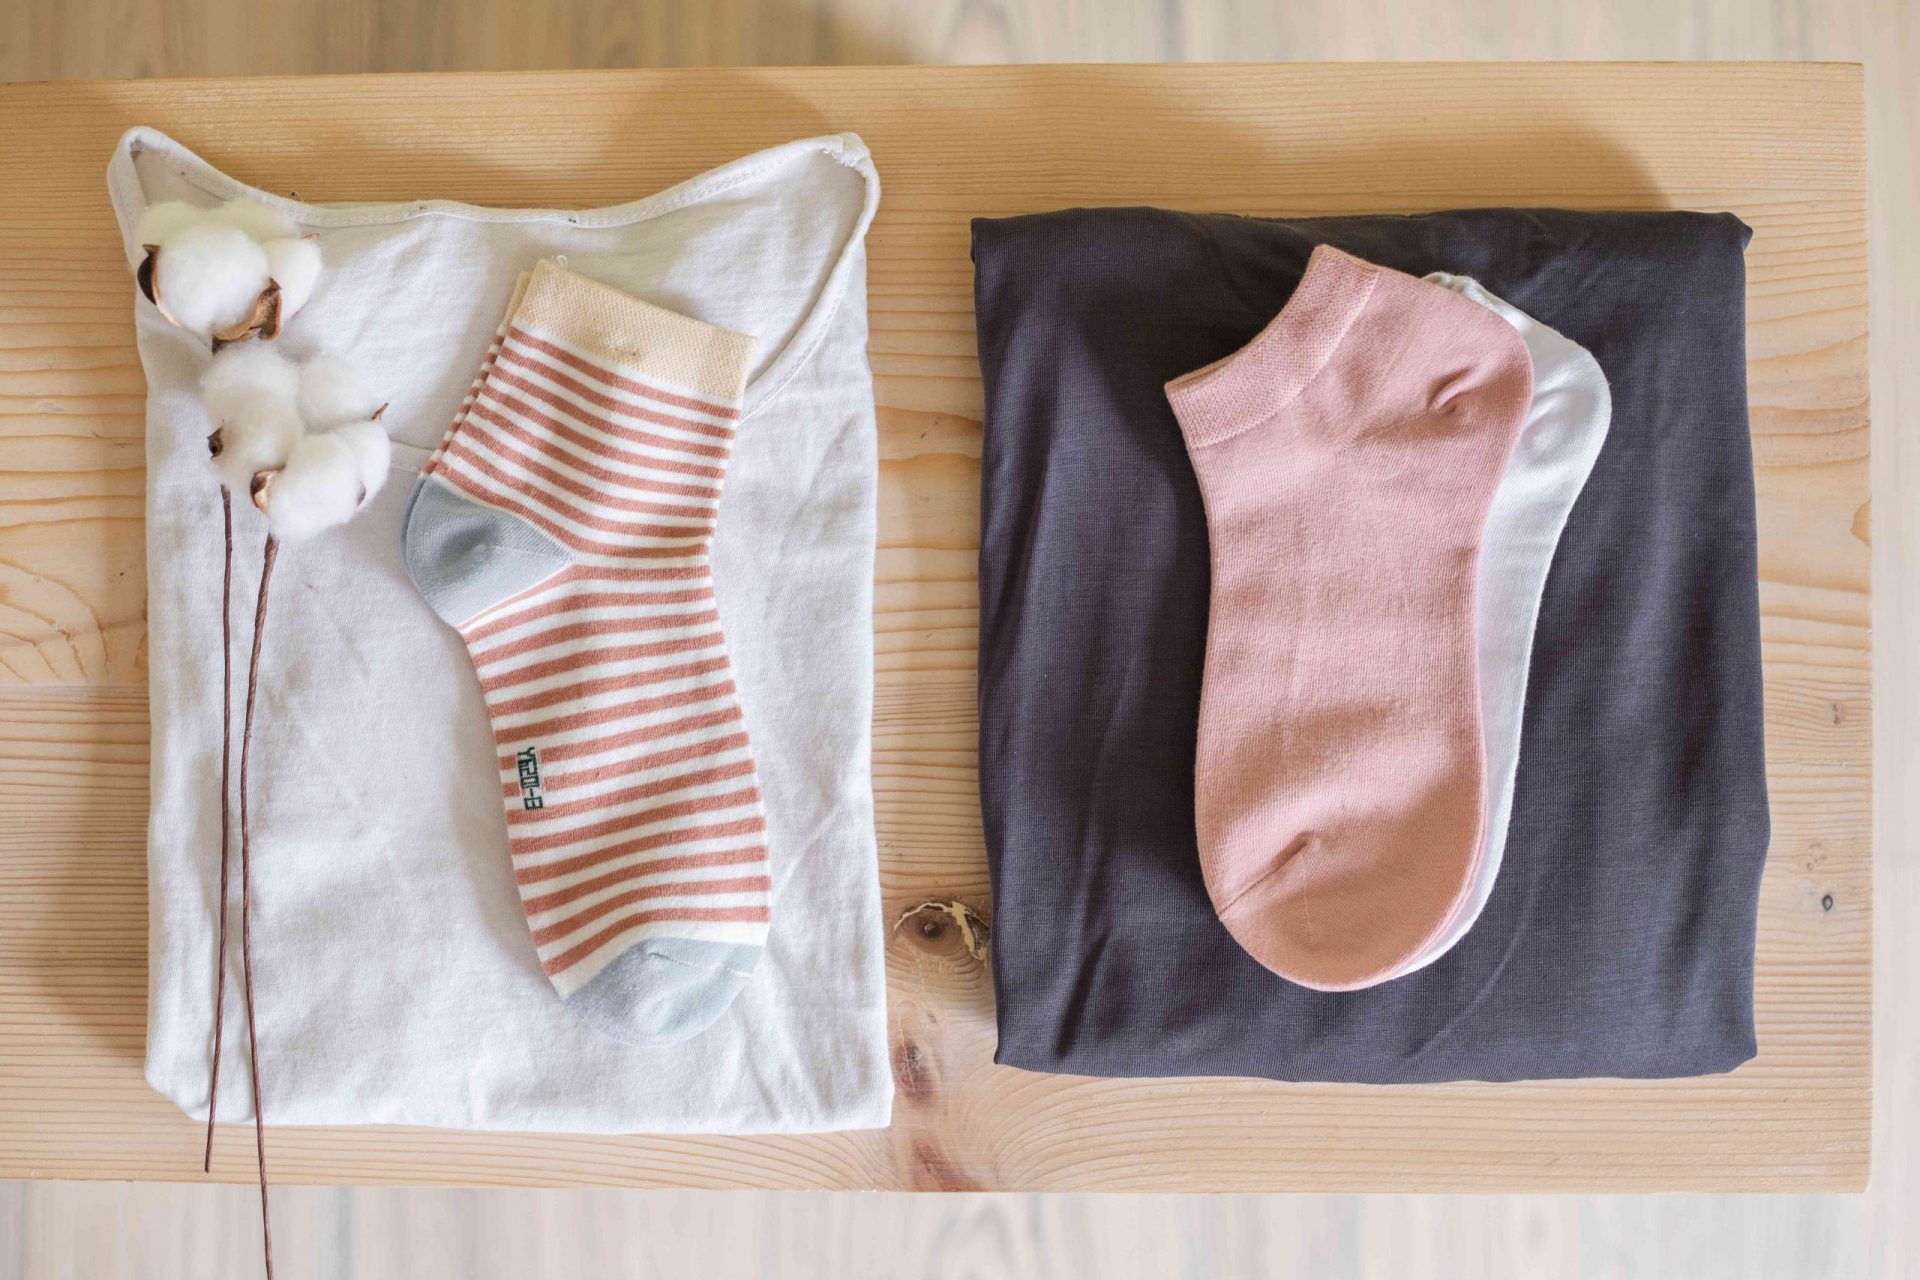 imagen plana de una camisa y calcetines de algodón y de una bola de algodón junto a una camisa y calcetines de modal